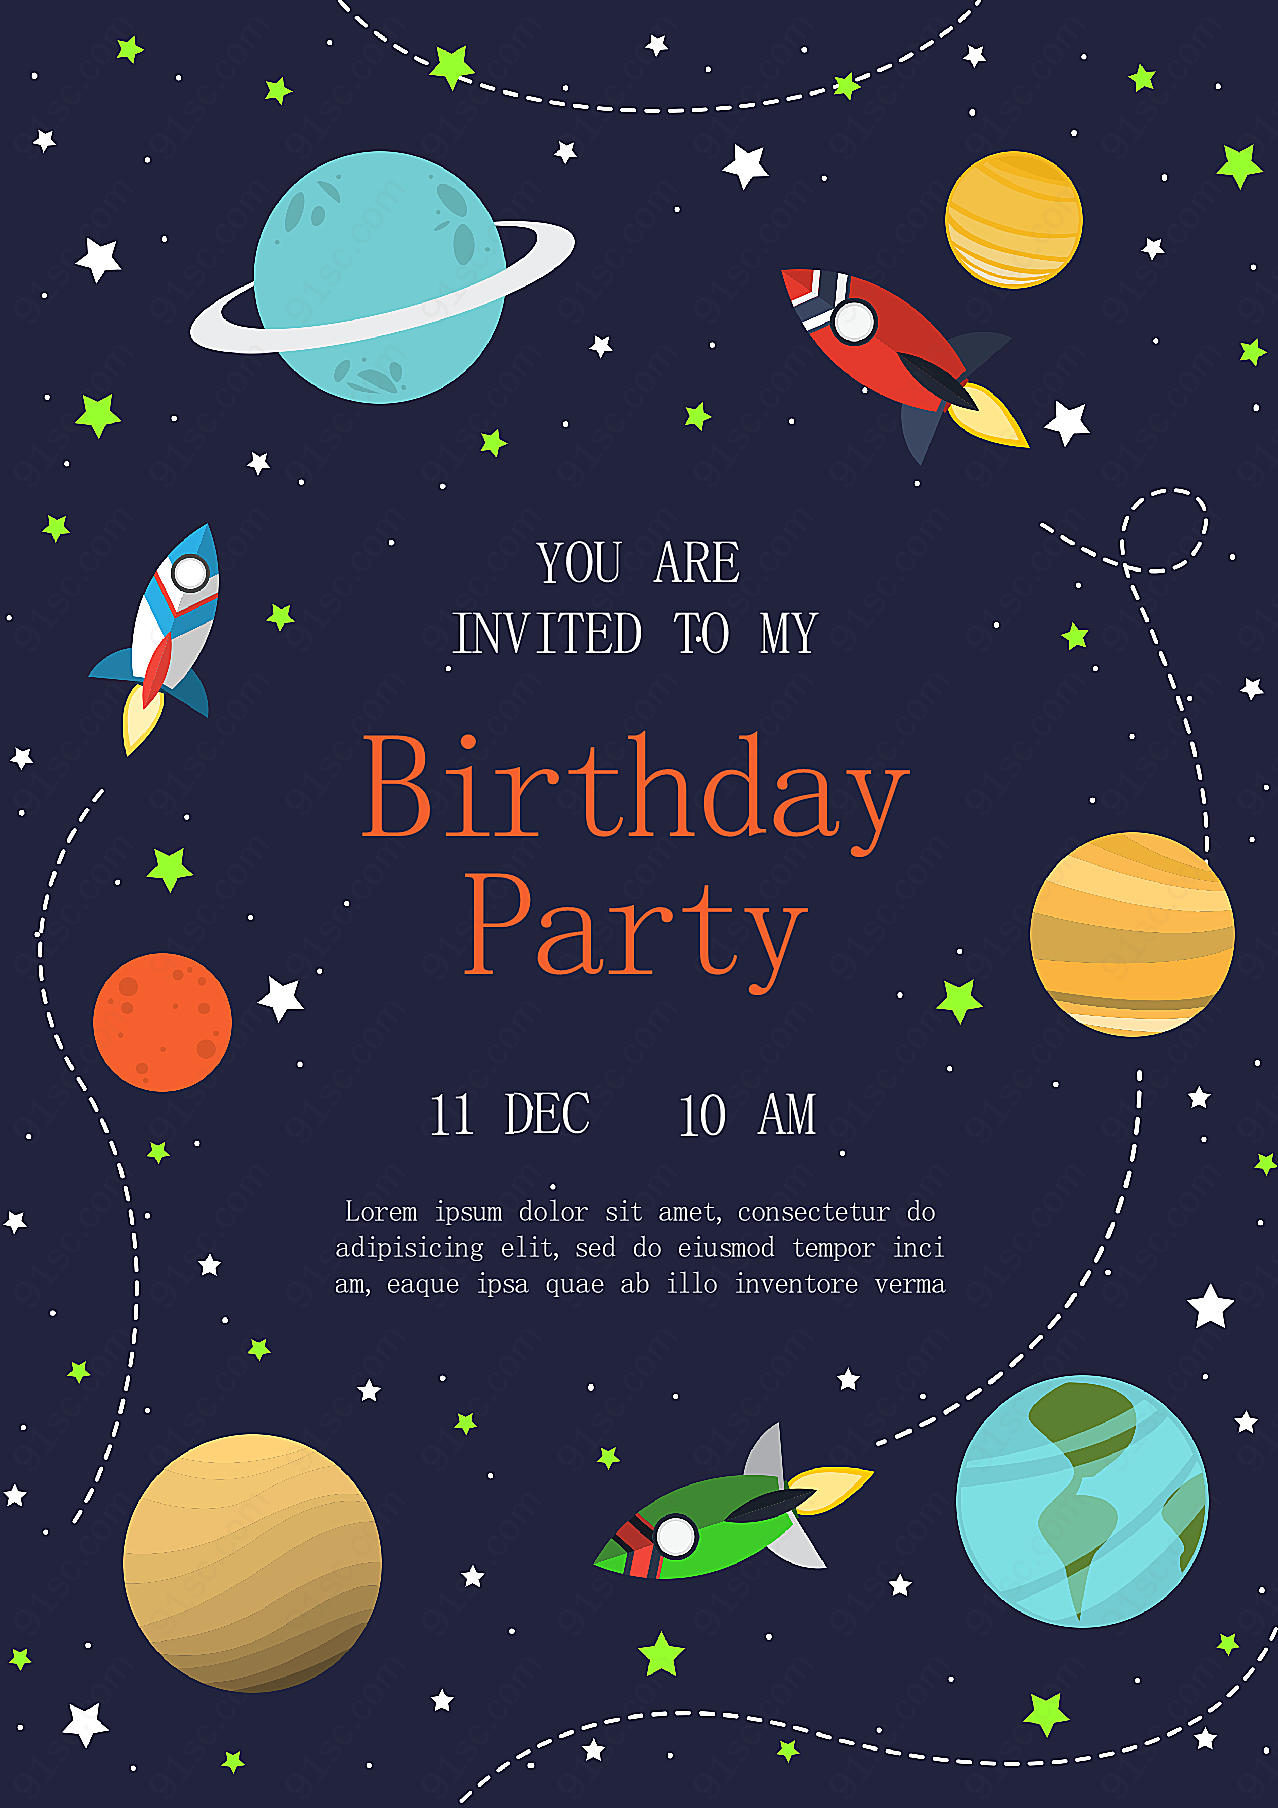 生日派对英文邀请卡设计创意概念